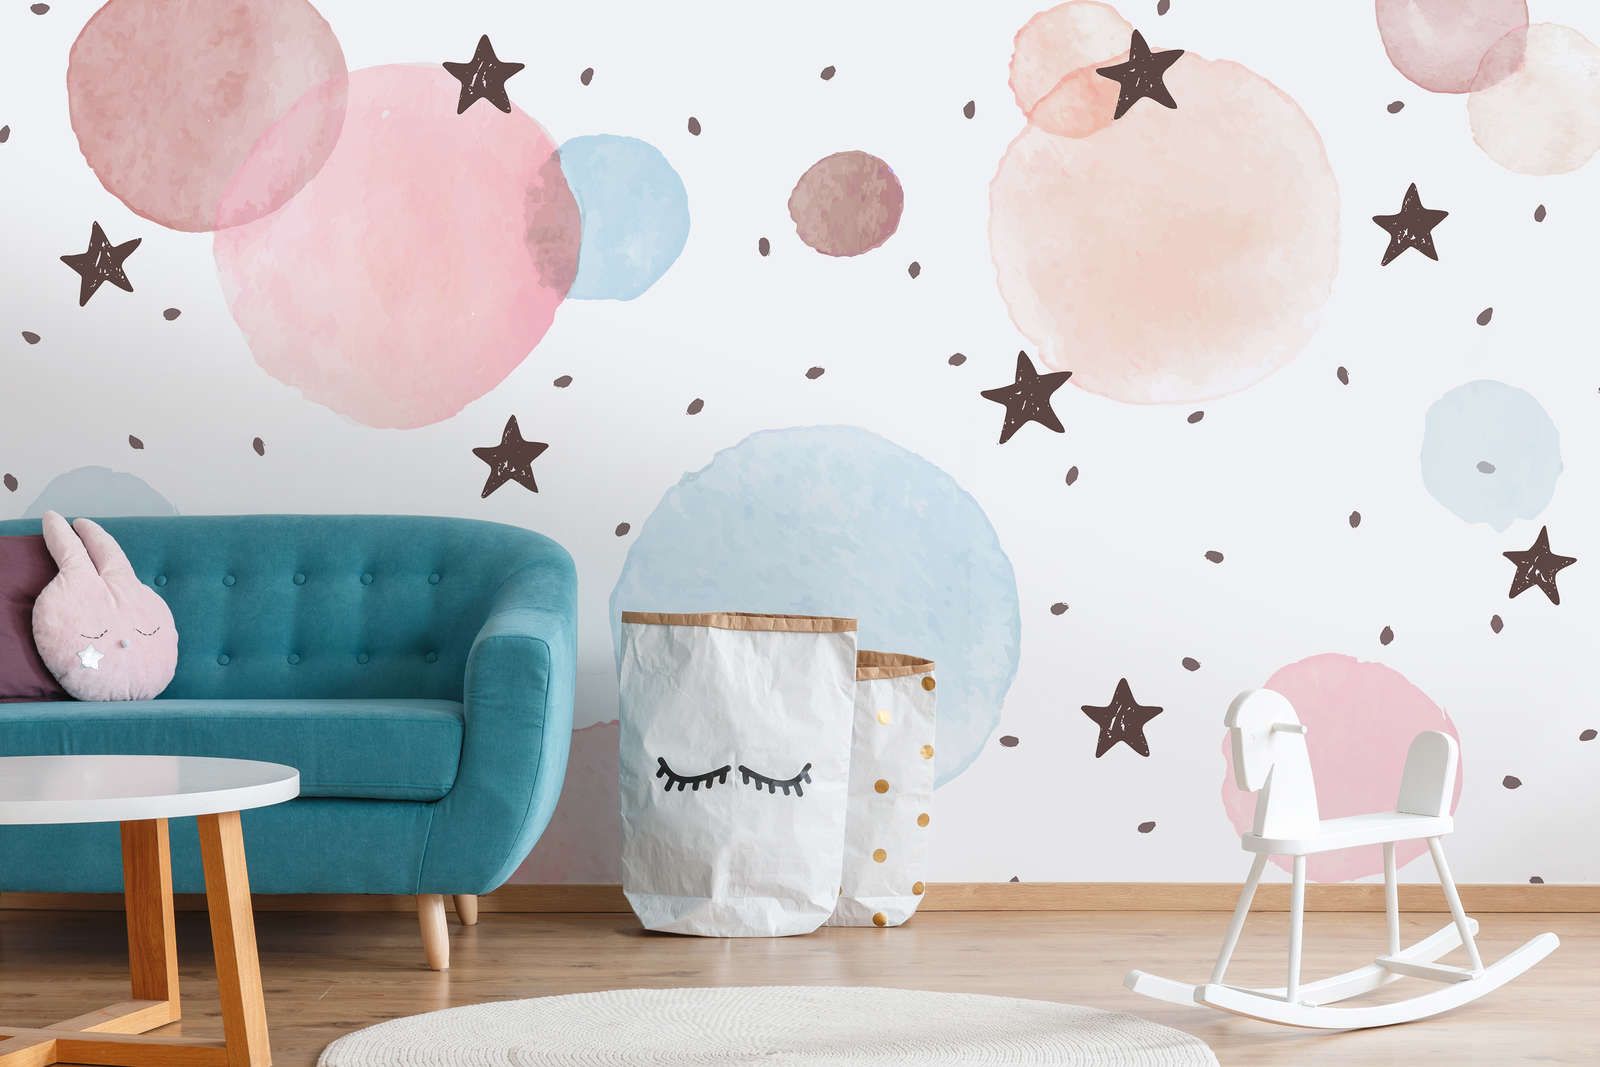             Fototapete fürs Kinderzimmer mit Sternen, Punkten und Kreisen – Glattes & mattes Vlies
        